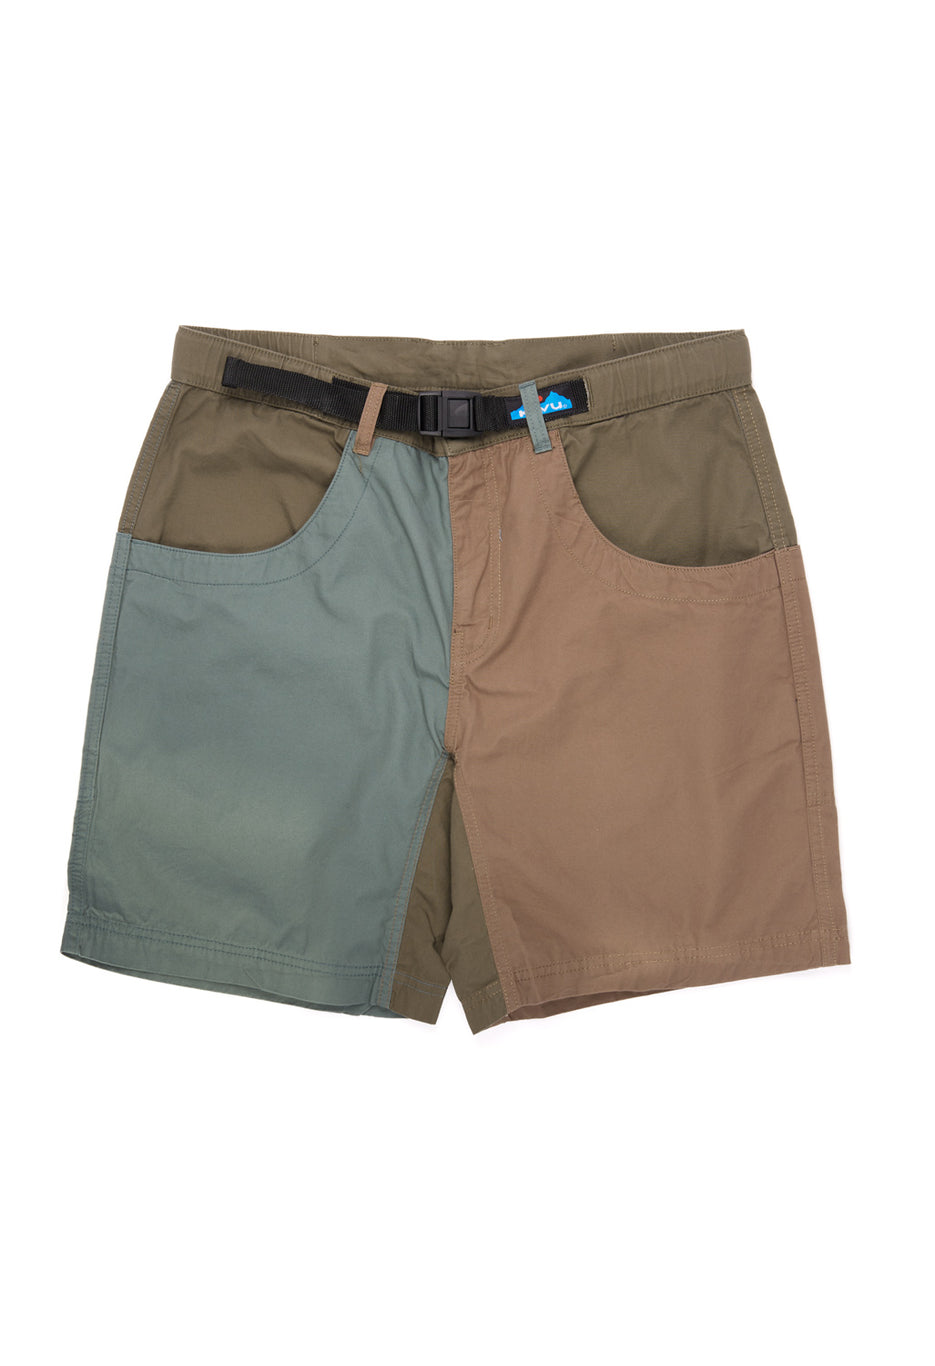 KAVU Men's Chilli Lite Shorts - Puzzled